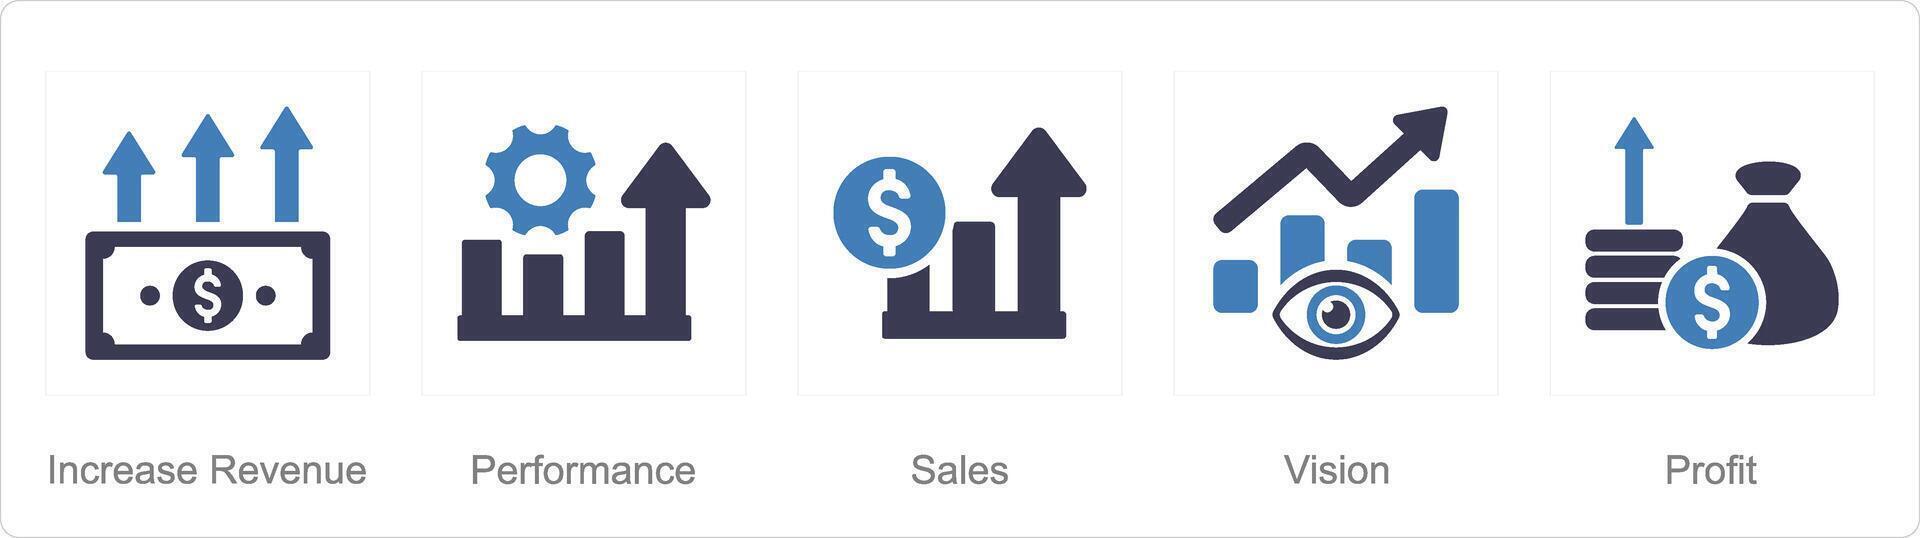 un conjunto de 5 5 incrementar rebaja íconos como incrementar venta, actuación, ventas vector